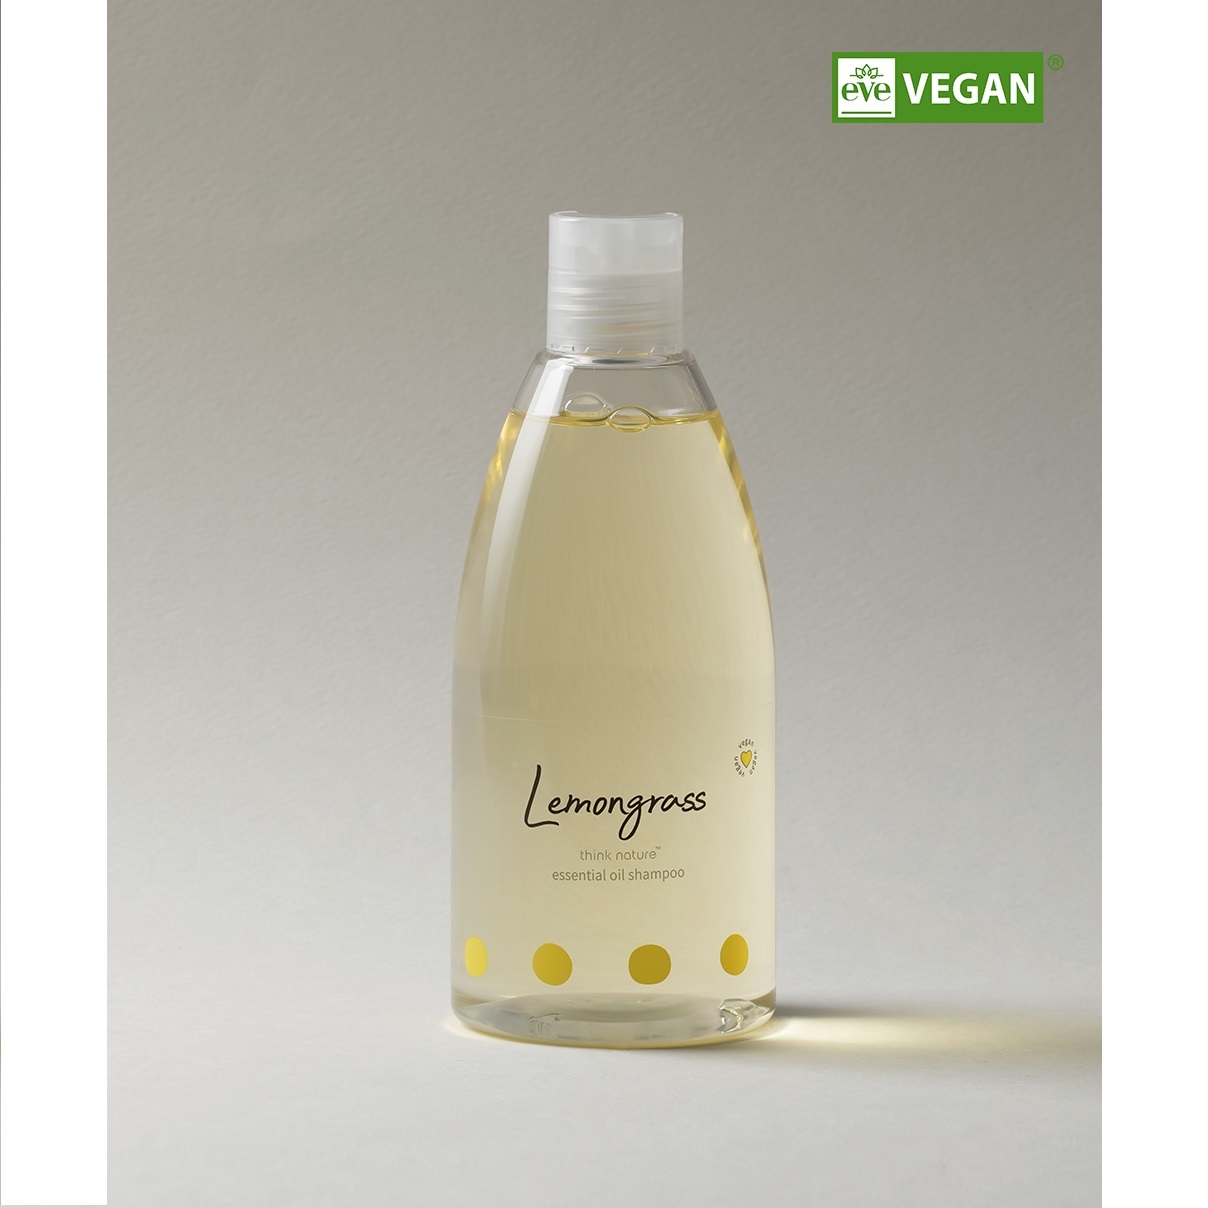 think nature Essential Oil Shampoo Lemongrass  500ml